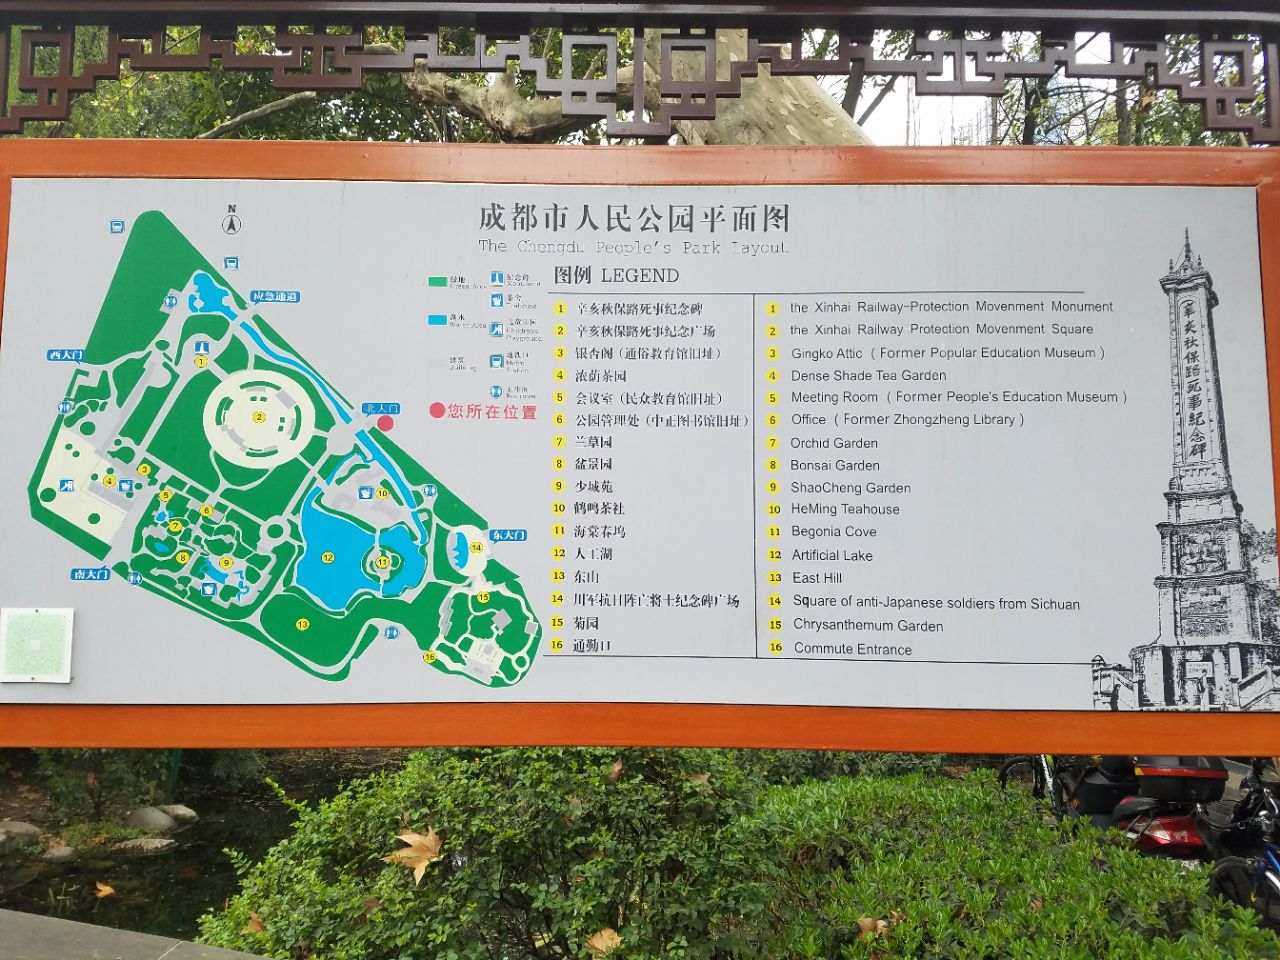 东台人民公园地图图片